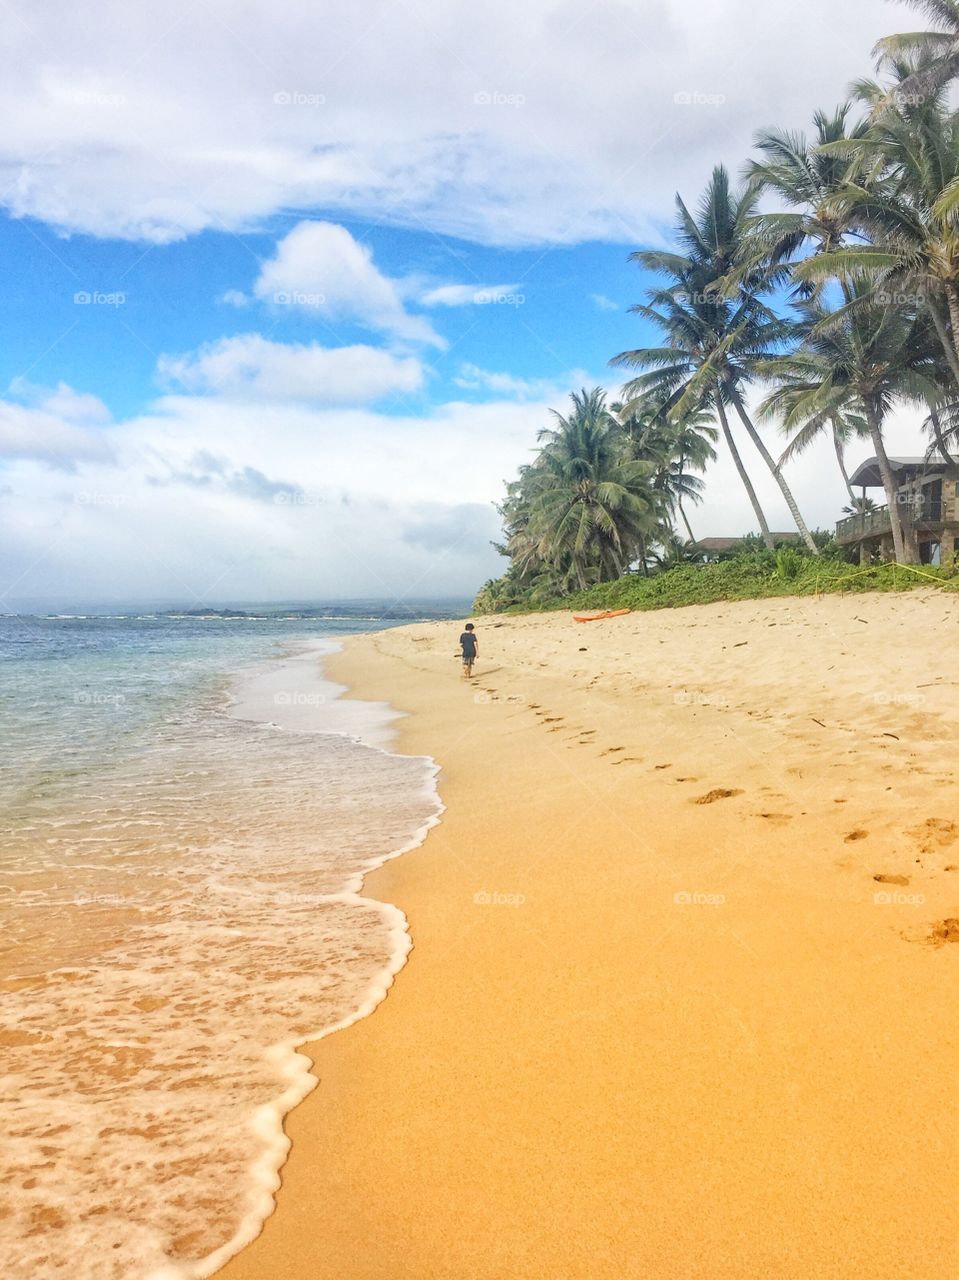 Running along the beach in Waialua, Hawaii